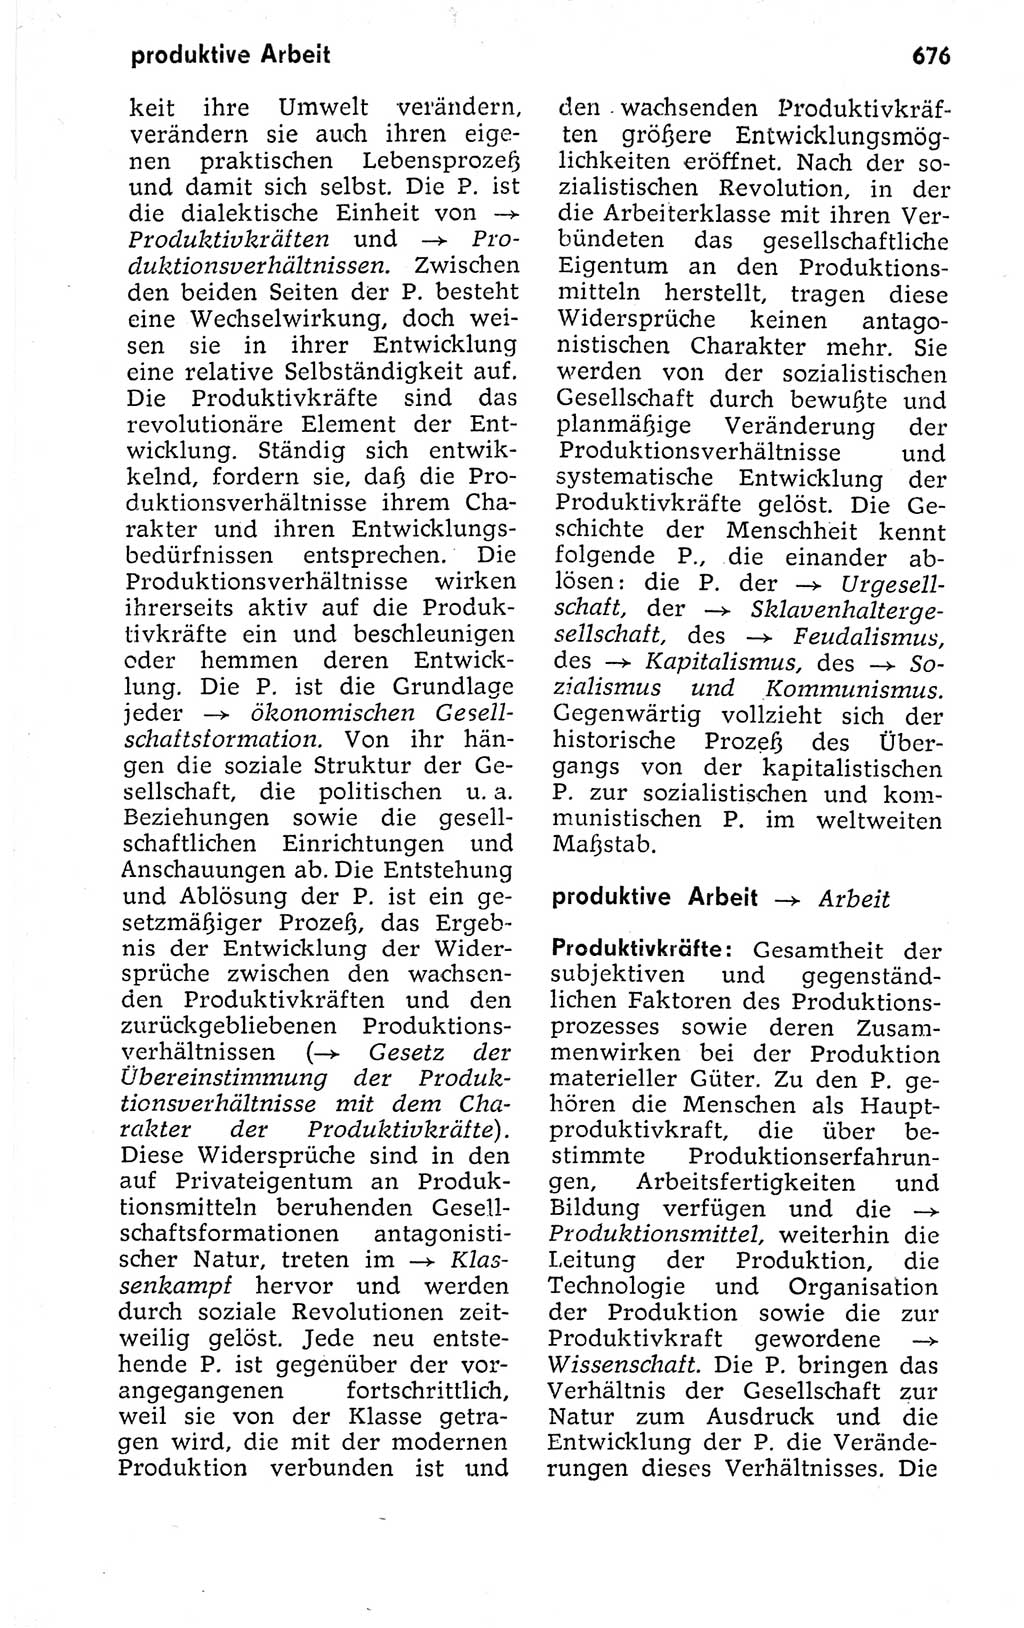 Kleines politisches Wörterbuch [Deutsche Demokratische Republik (DDR)] 1973, Seite 676 (Kl. pol. Wb. DDR 1973, S. 676)